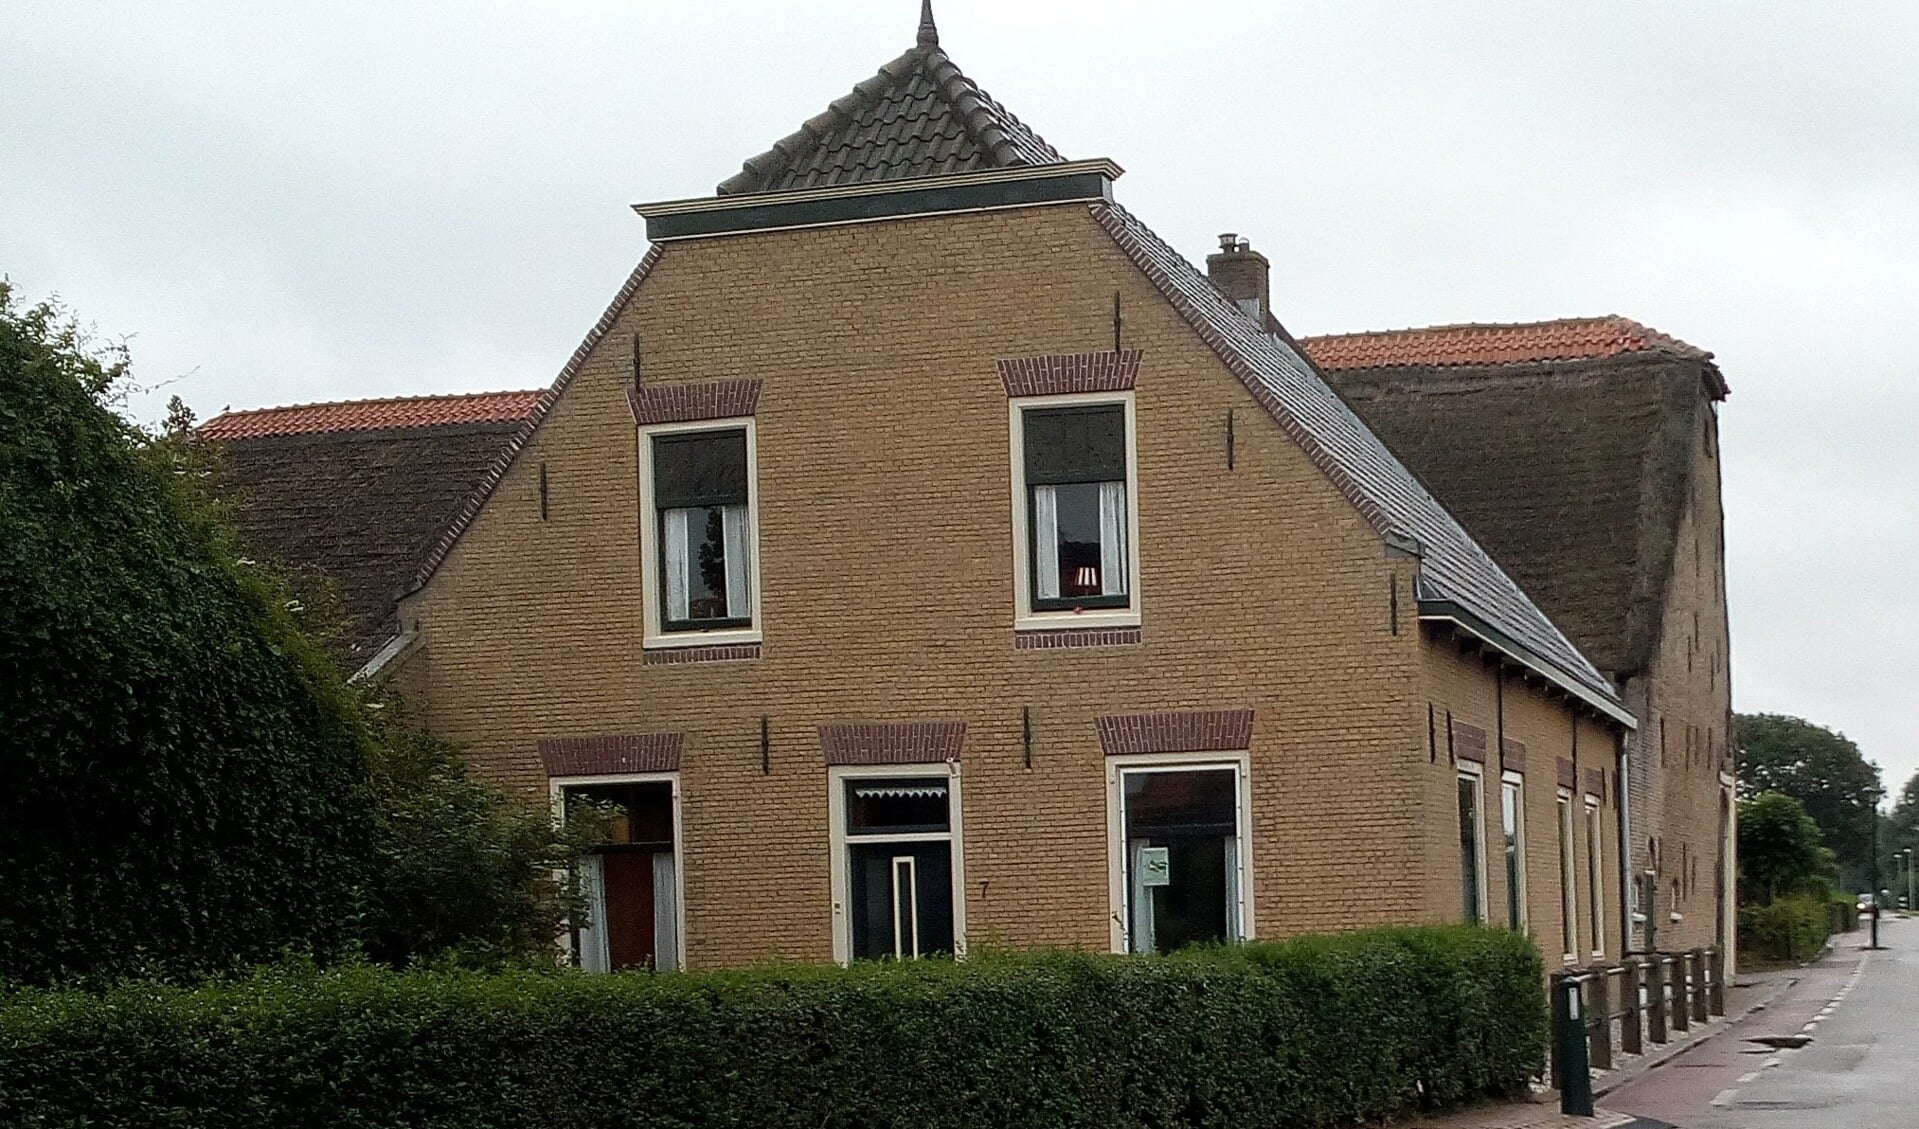 De gemeente Westvoorne betaalt vanwege de monumentale uitstraling mee aan de vervanging van het rieten dak van de schuur aan de Kade